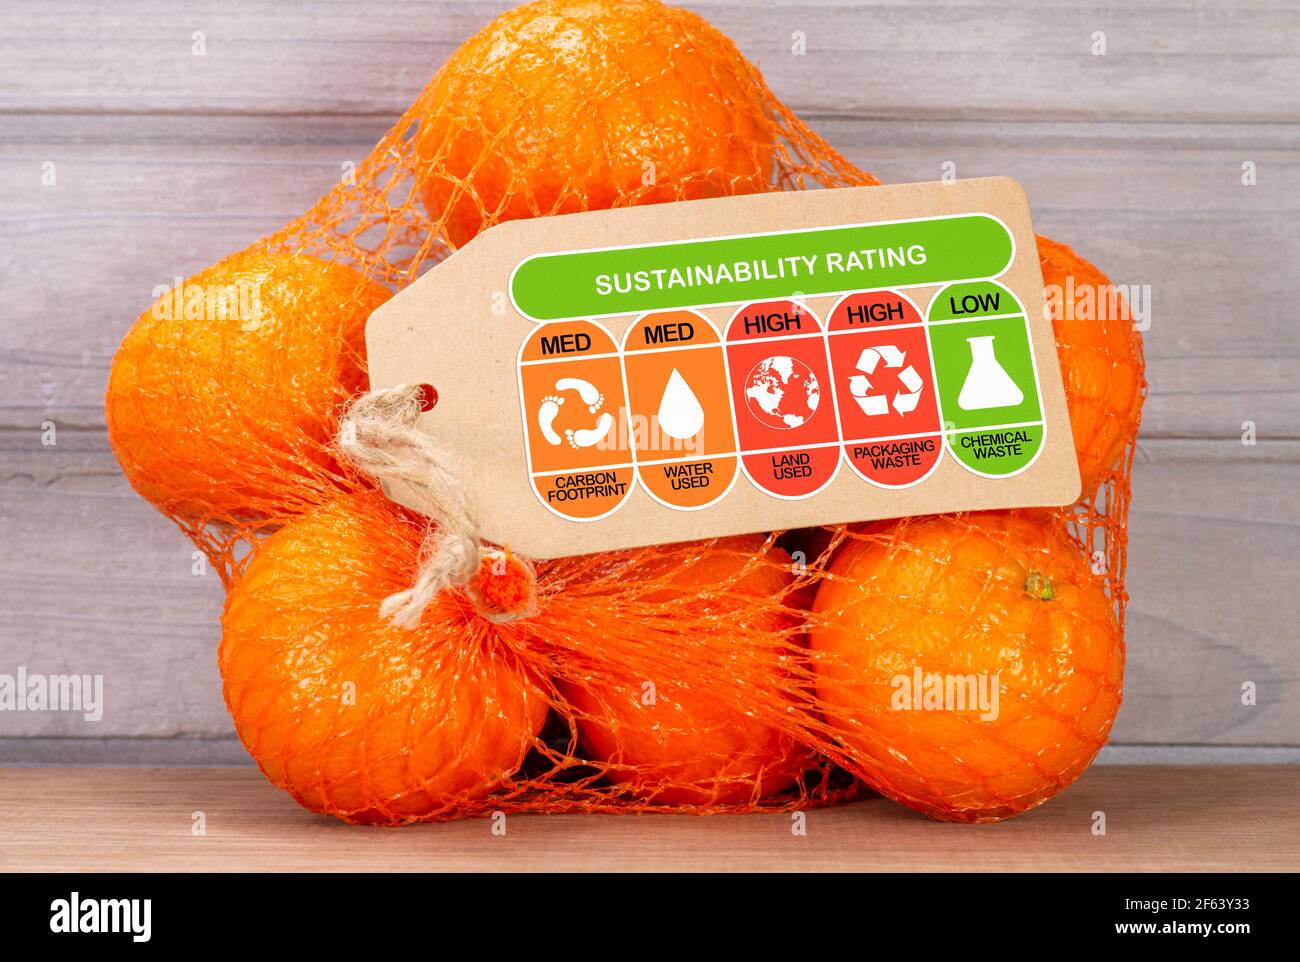 Etichetta di valutazione per la sostenibilità ambientale dei consumatori su un sacchetto di arance con valori nominali alti, med e bassi per l'impronta di carbonio degli alimenti, l'uso di acqua, l'uso del territorio, pa Foto Stock